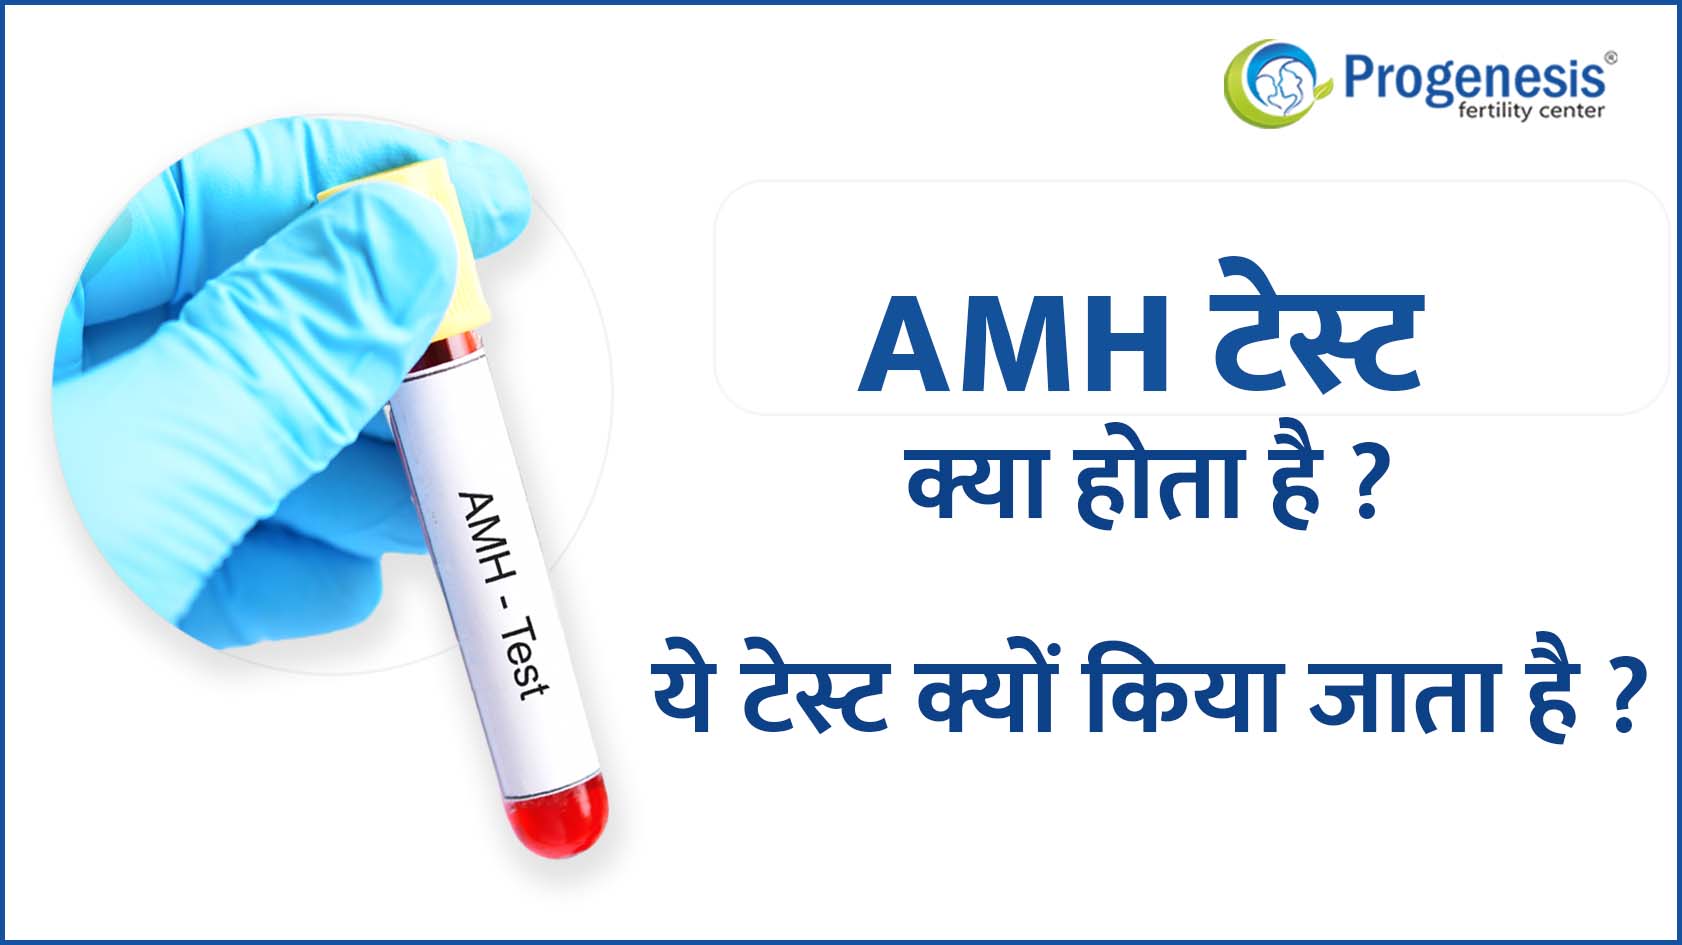 AMH टेस्ट क्या होता है? <strong>एंटी-मुलेरियन हार्मोन</strong> टेस्ट क्यों किया जाता है ?